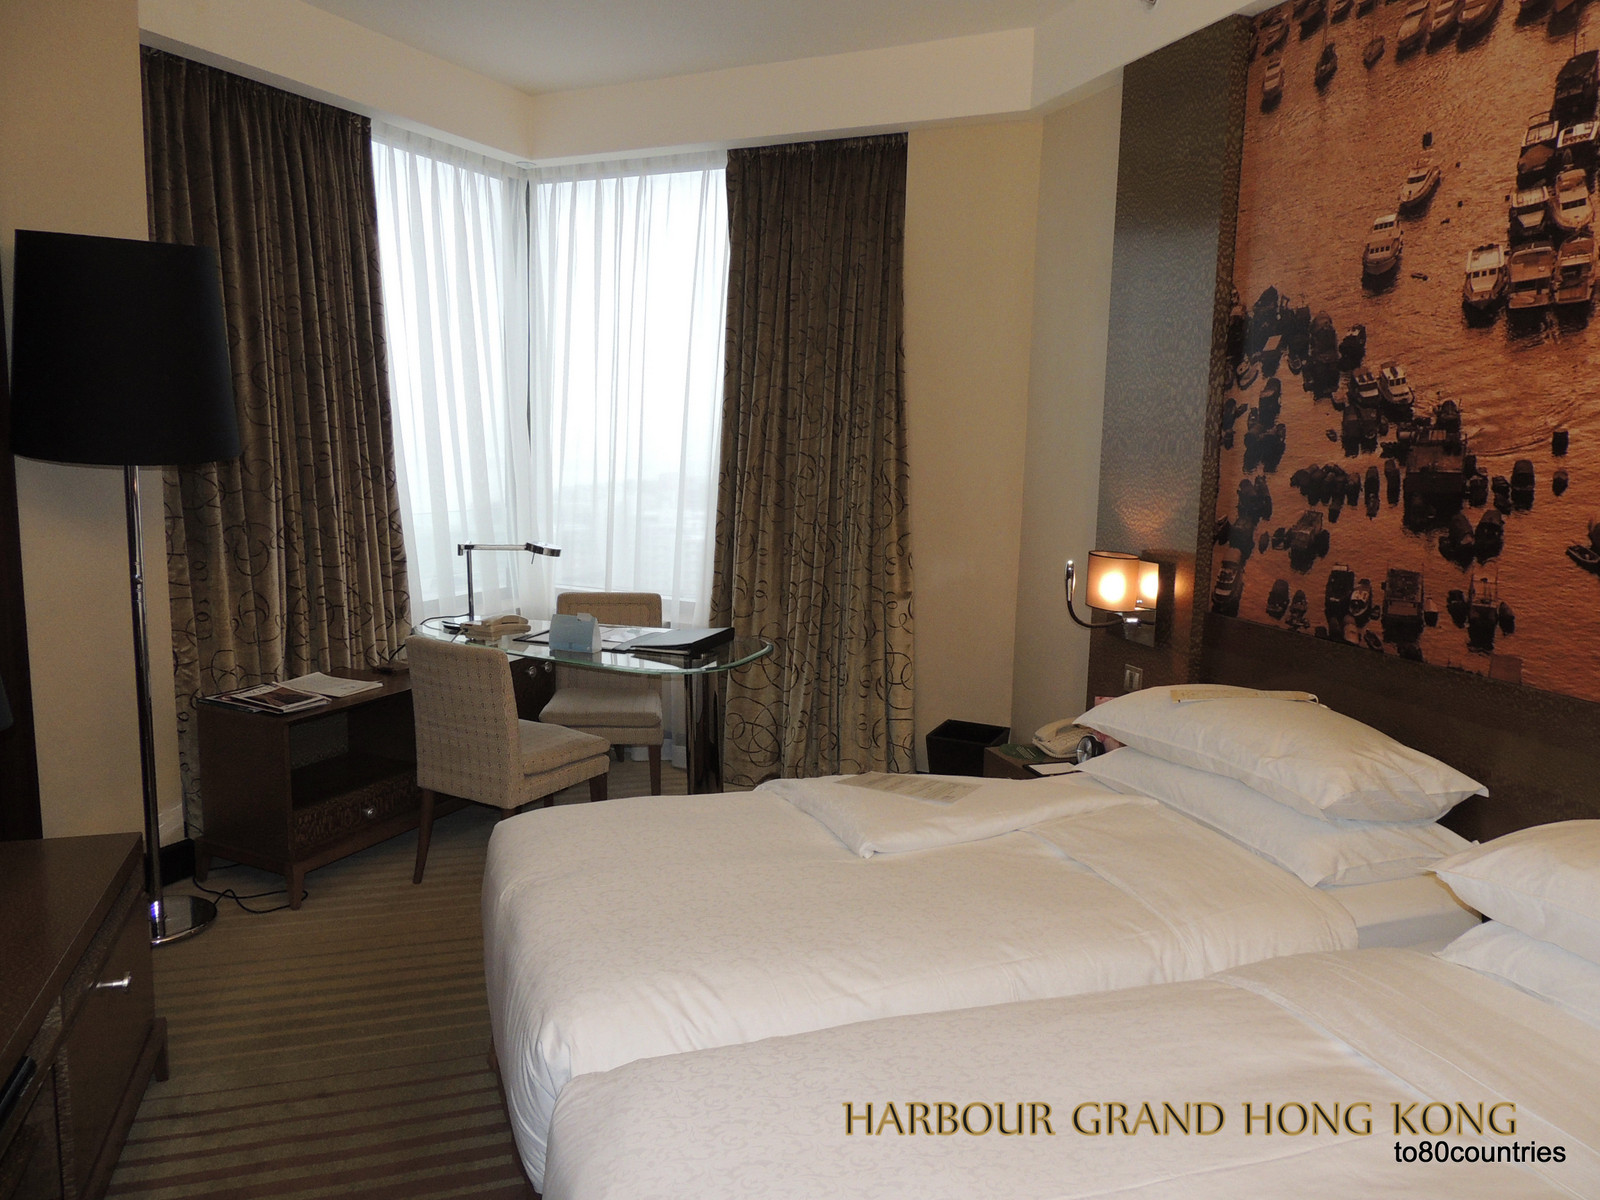 Hotel "Harbour Grand Hongkong"